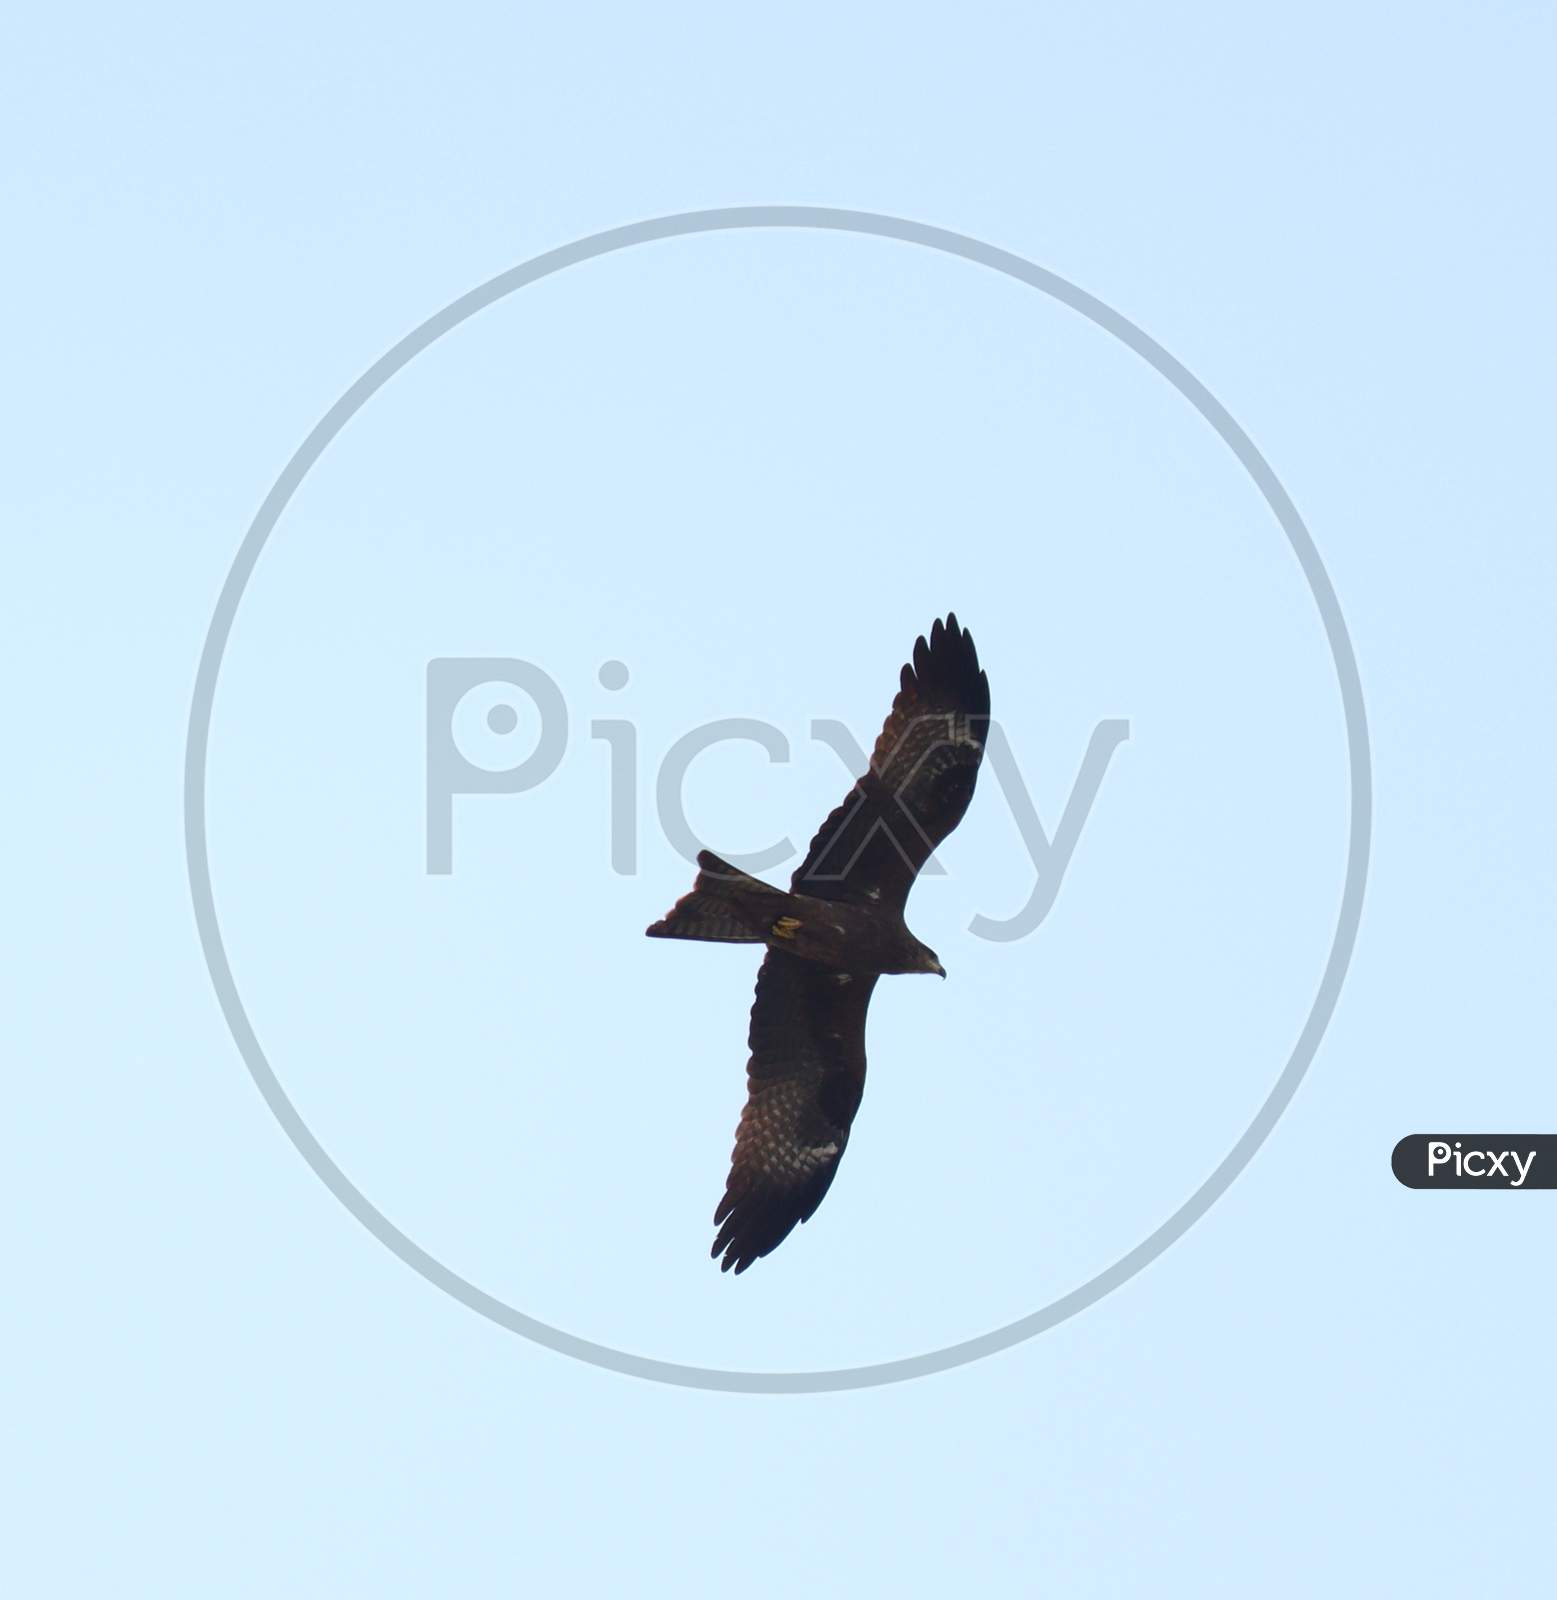 Black Kite flying high